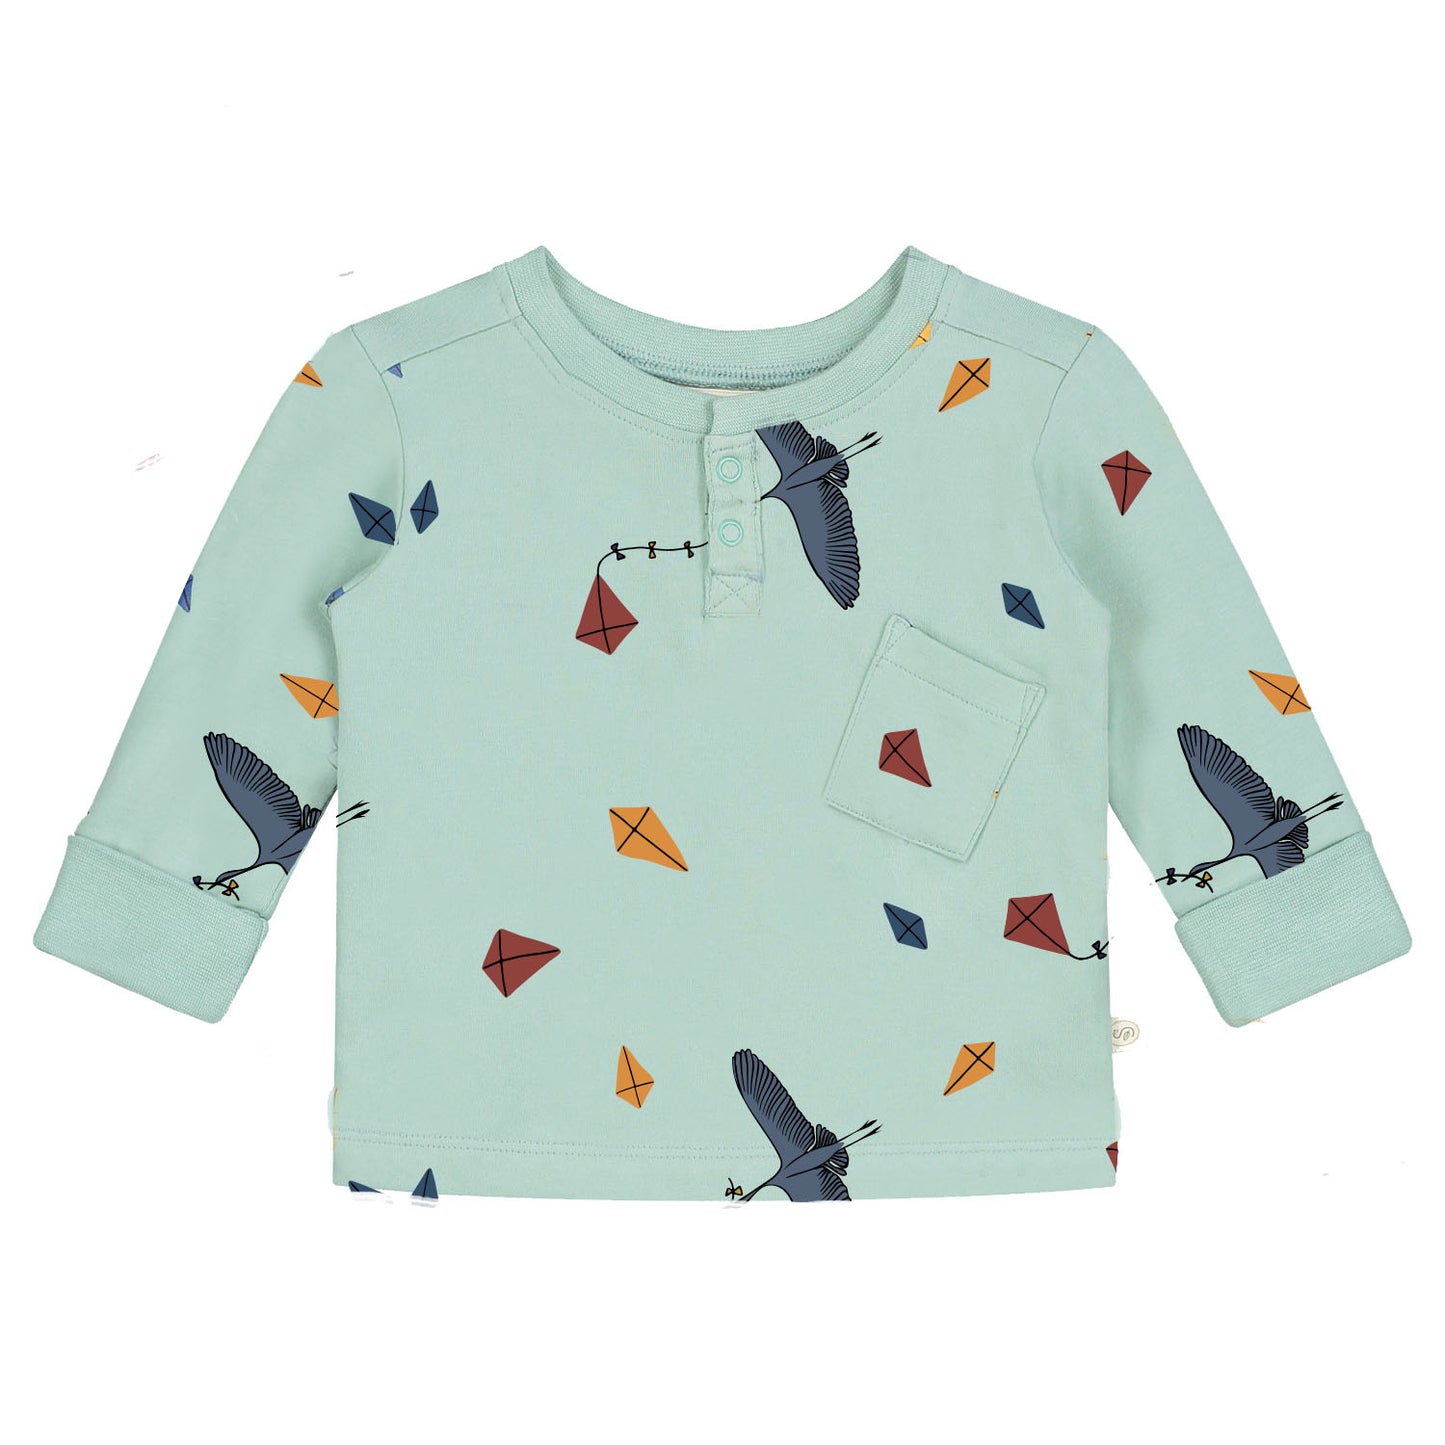 Langärmliges T-Shirt mit durchgehendem Drachen- und Vogeldruck